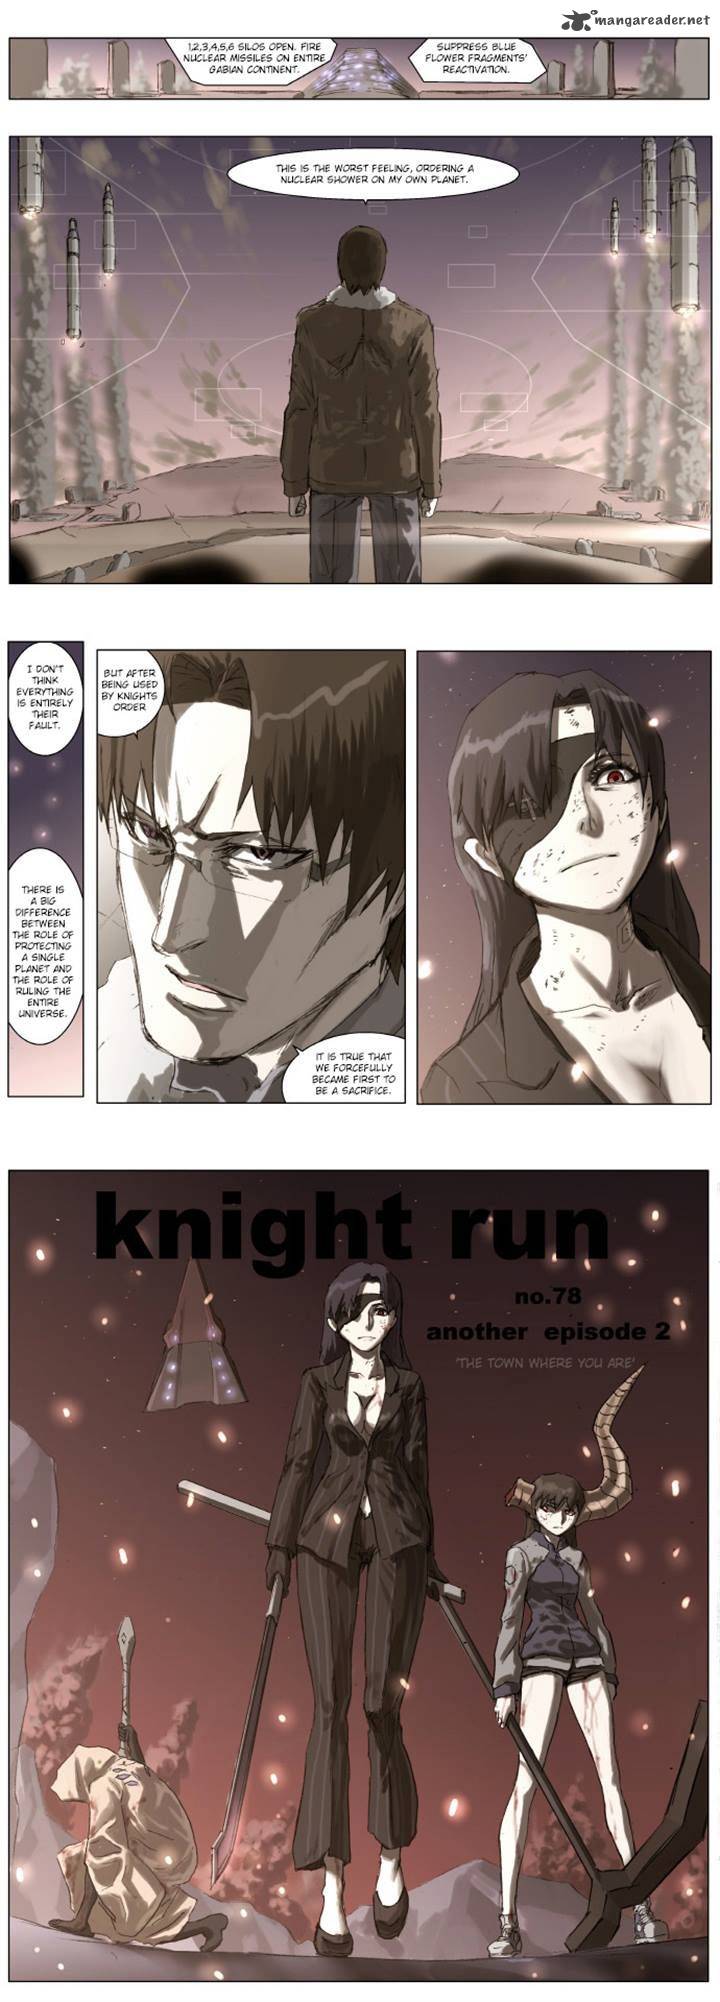 knight_run_78_17